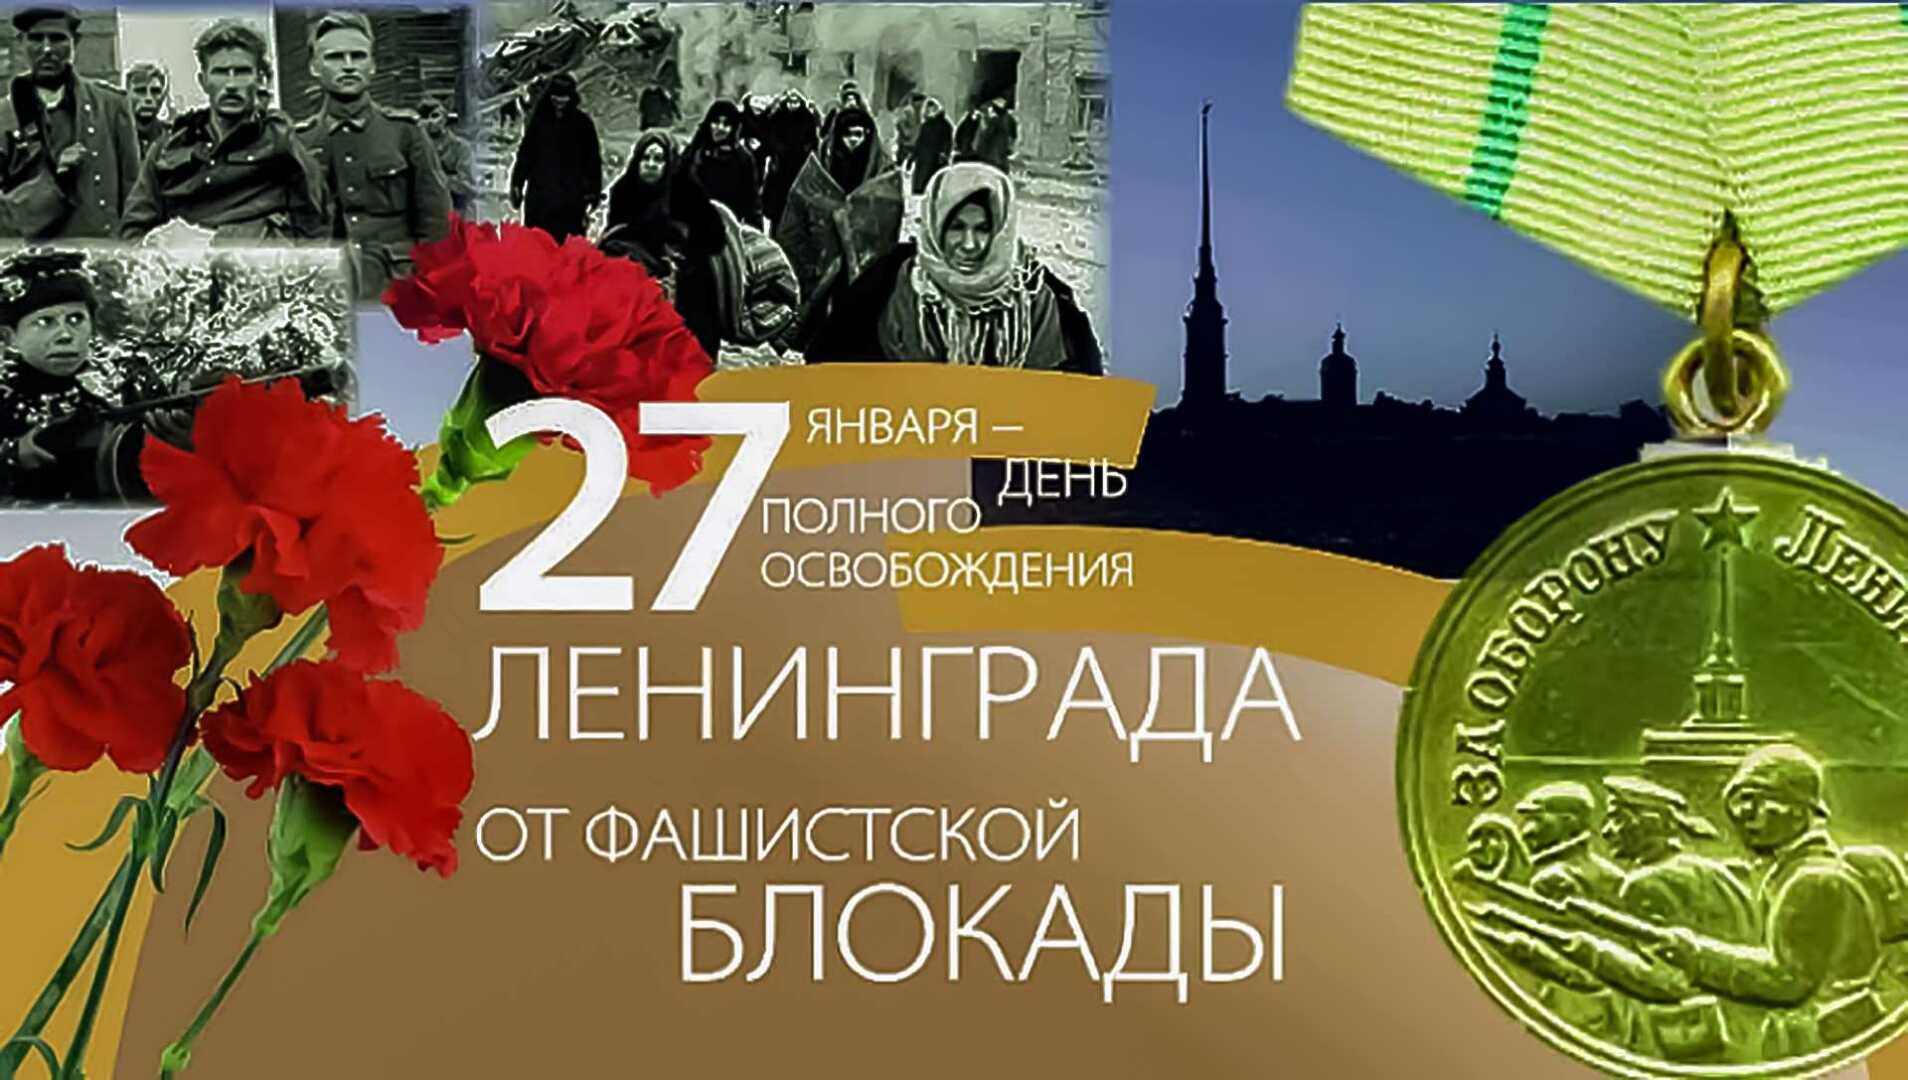 80 лет полного освобождения Ленинграда от фашистской блокады